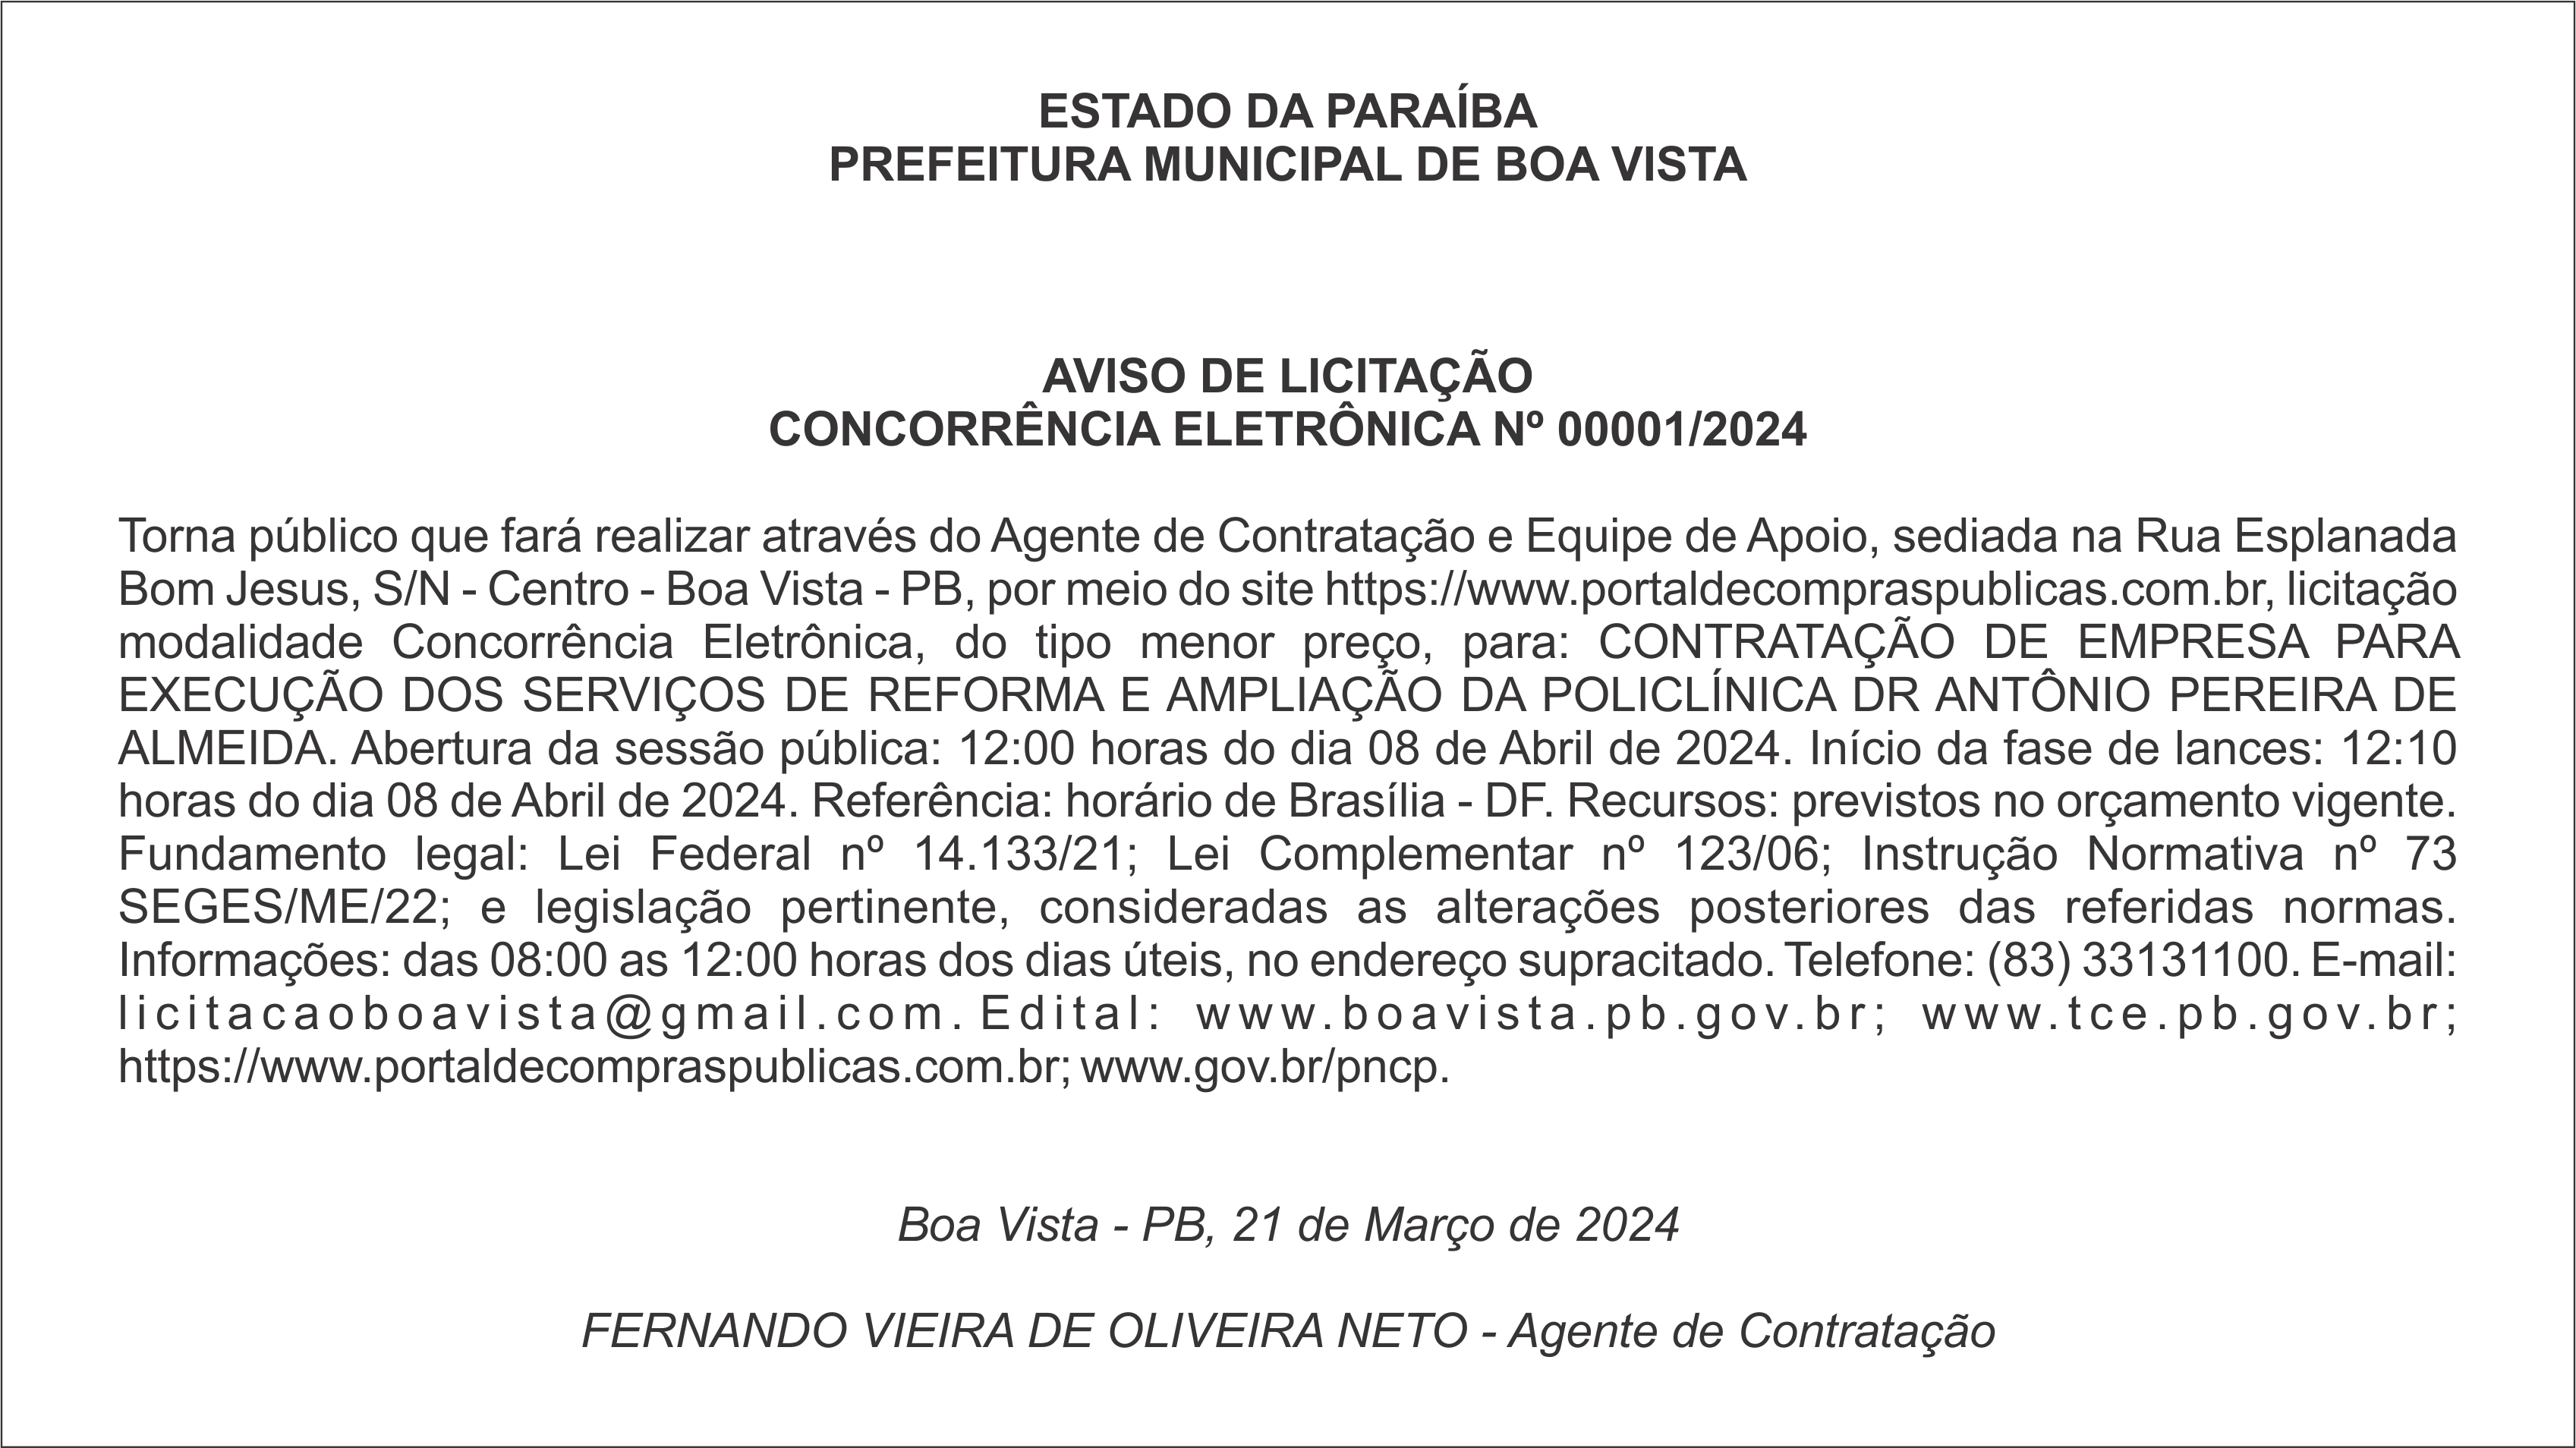 PREFEITURA MUNICIPAL DE BOA VISTA – AVISO DE LICITAÇÃO – CONCORRÊNCIA ELETRÔNICA Nº 00001/2024